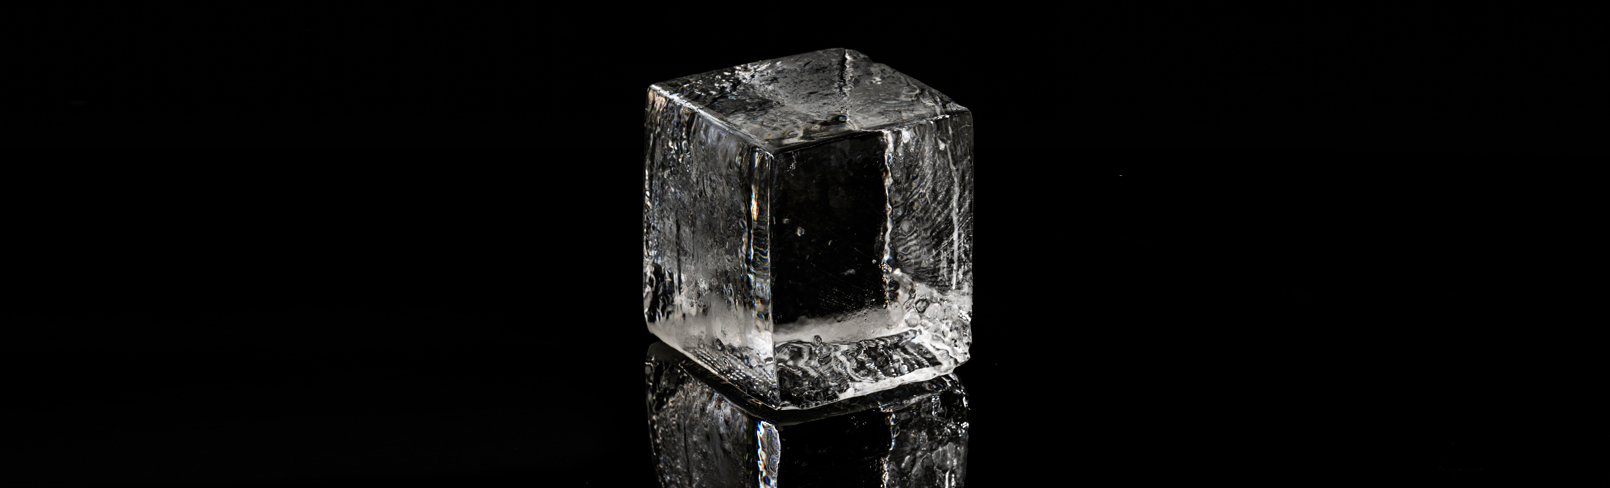 かき氷用「半貫目」の氷